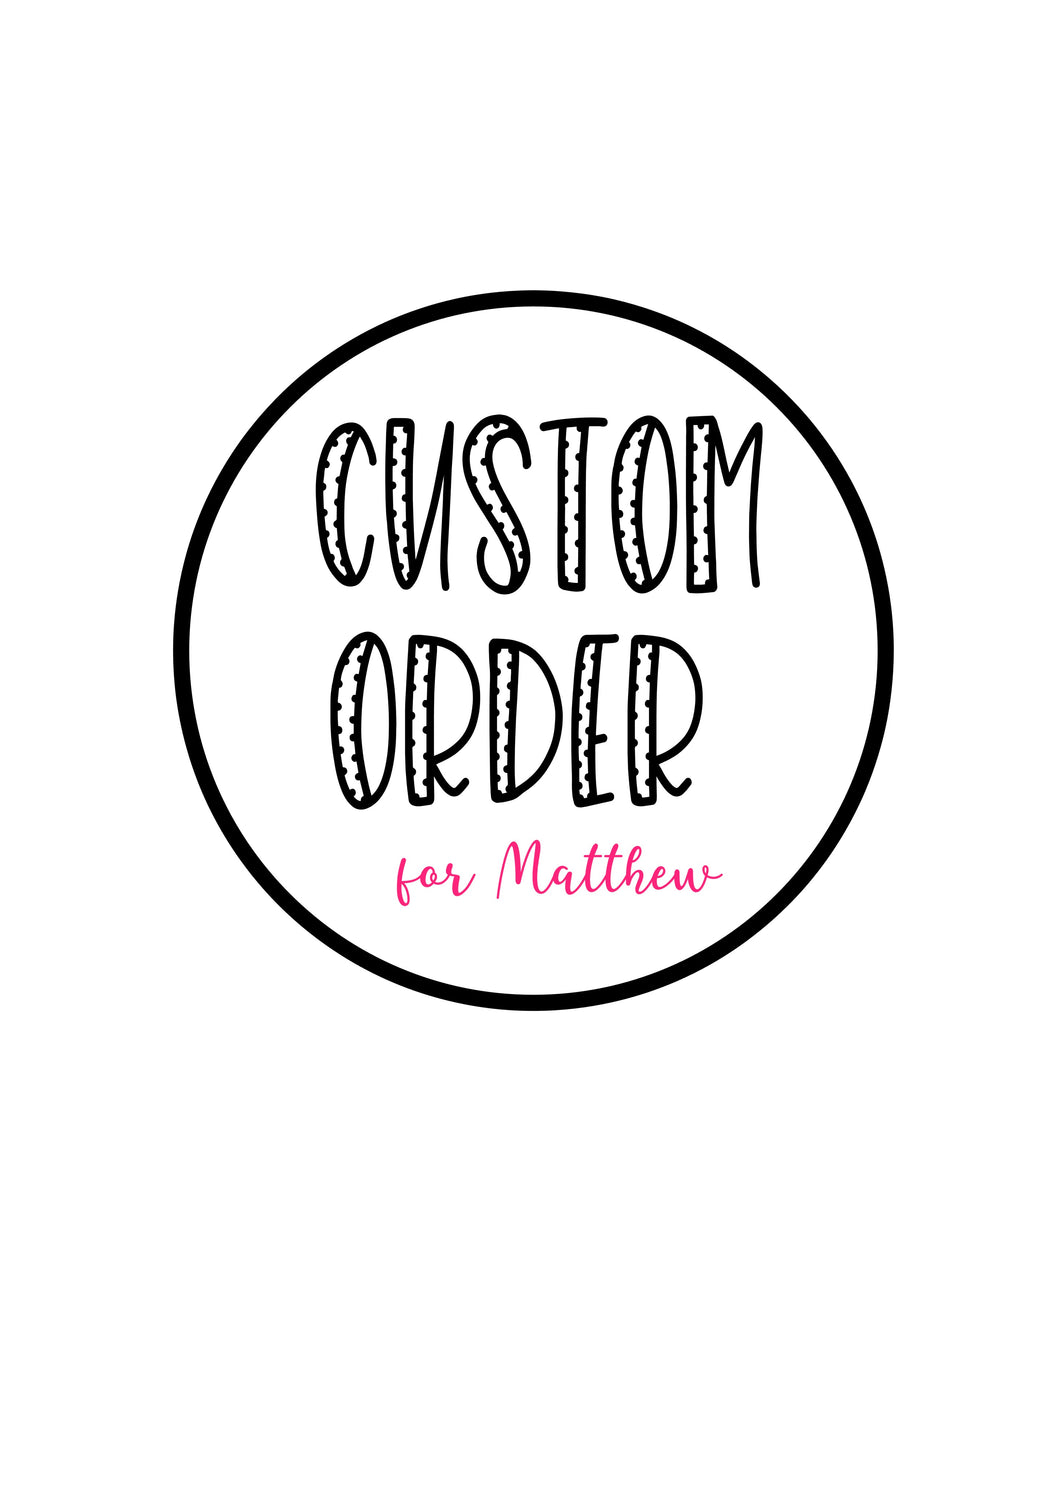 Custom order for Matthew